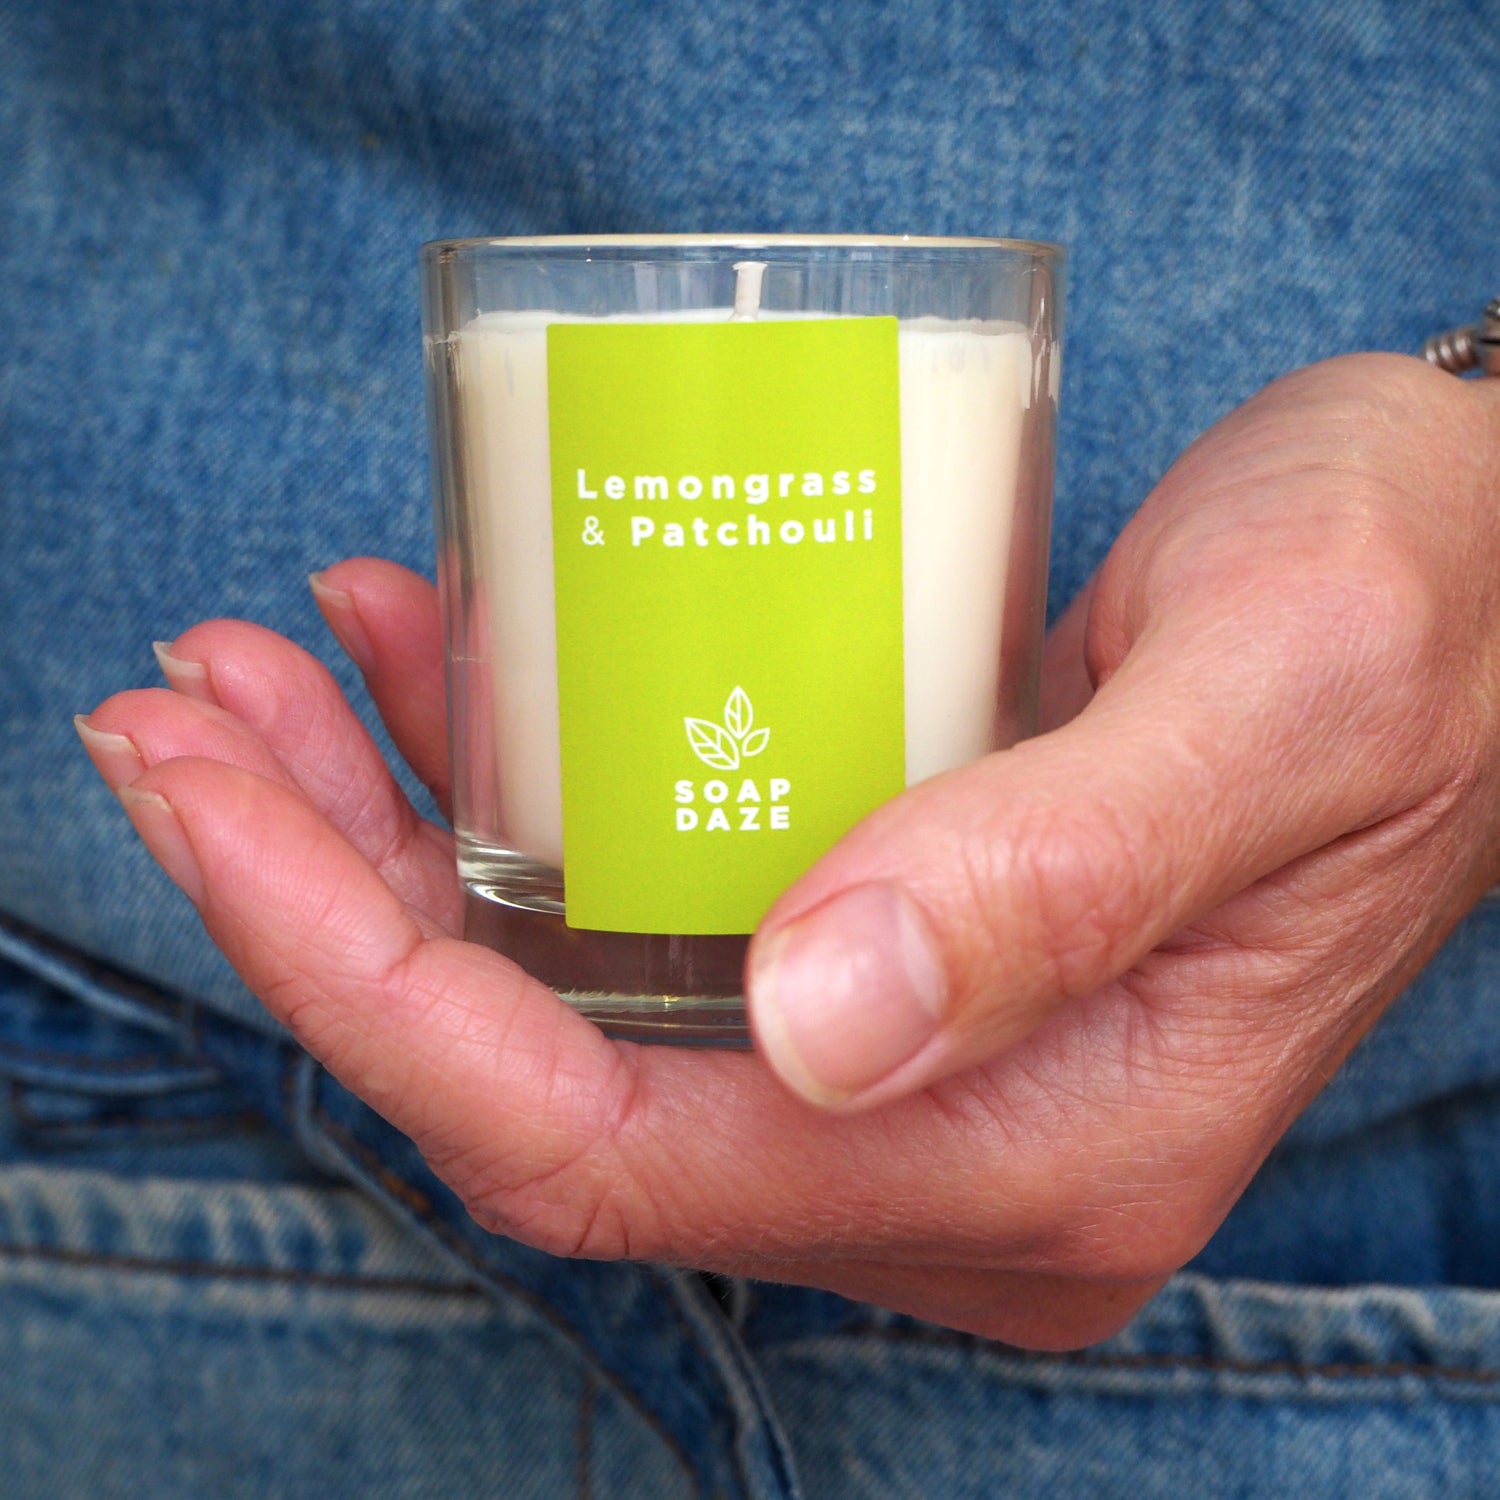 Lemongrass &amp; Patchouli boxed votive candle